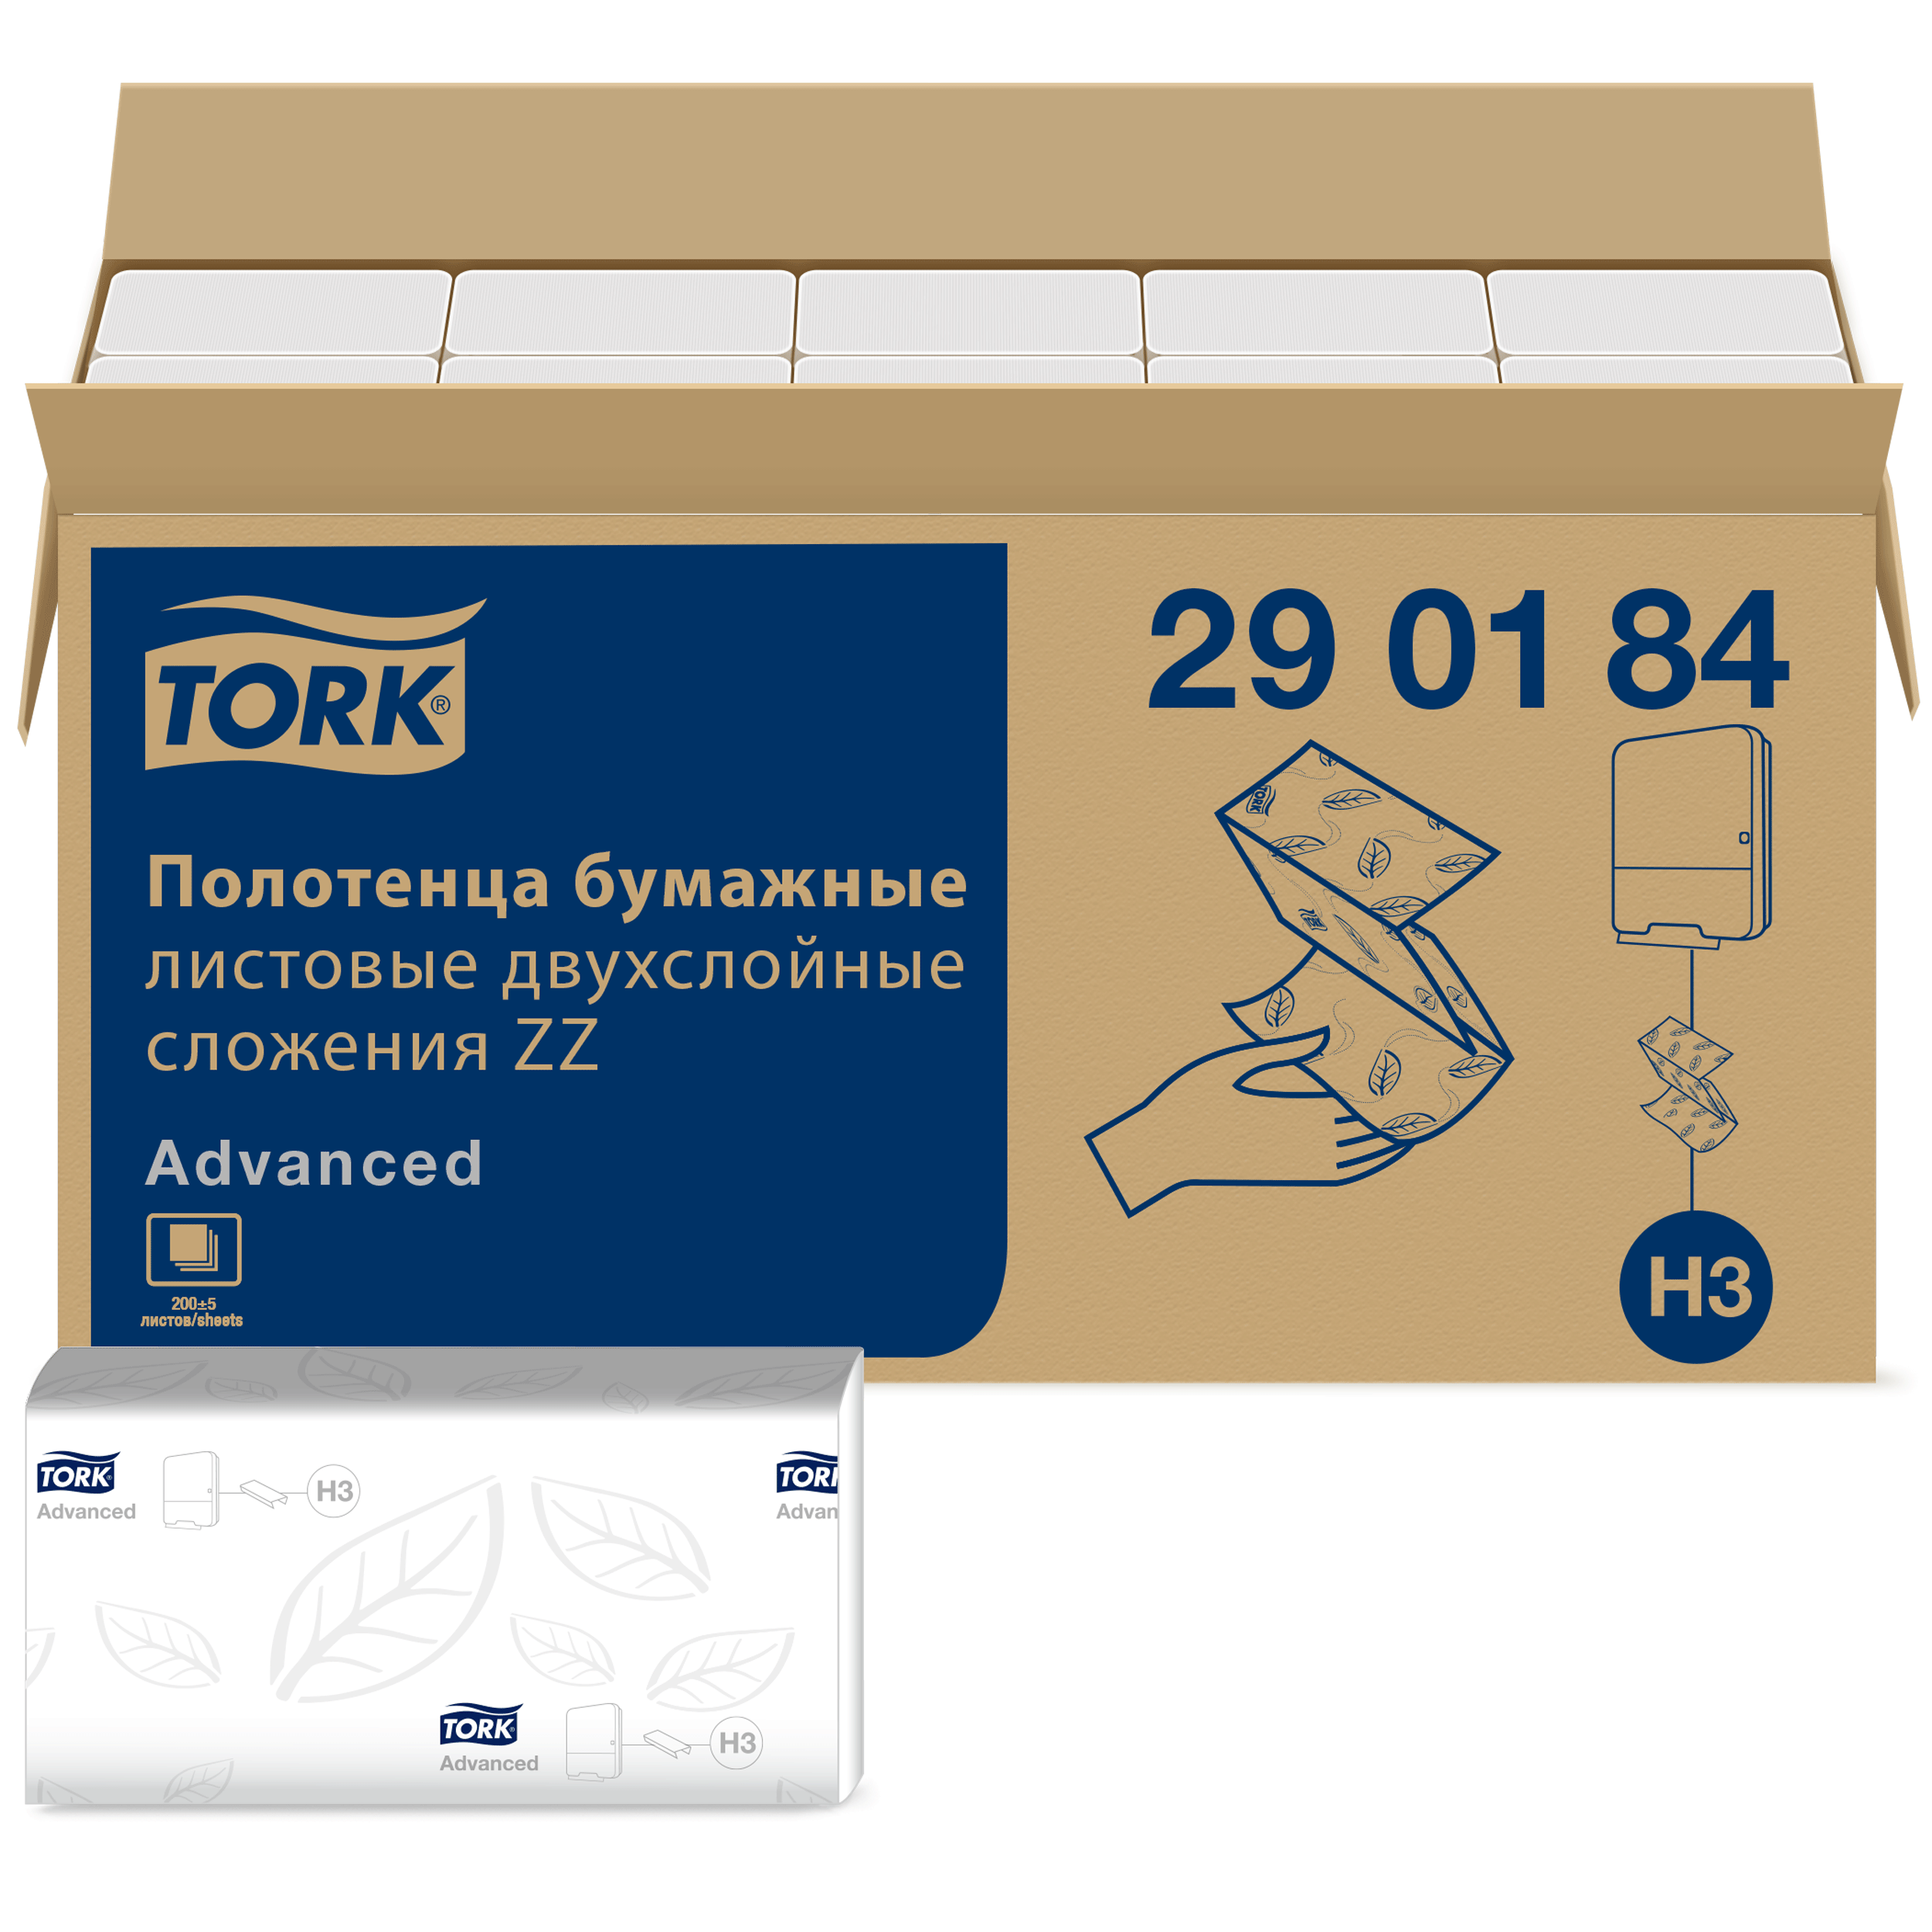 Бумажные полотенца tork h3. 290184 Торк полотенца бумажные. Tork листовые полотенца Singlefold сложения ZZ 290184. Tork h3 Advanced. Листовые полотенца Tork Singlefold сложения ZZ Advanced белые, н3 2/200/20.